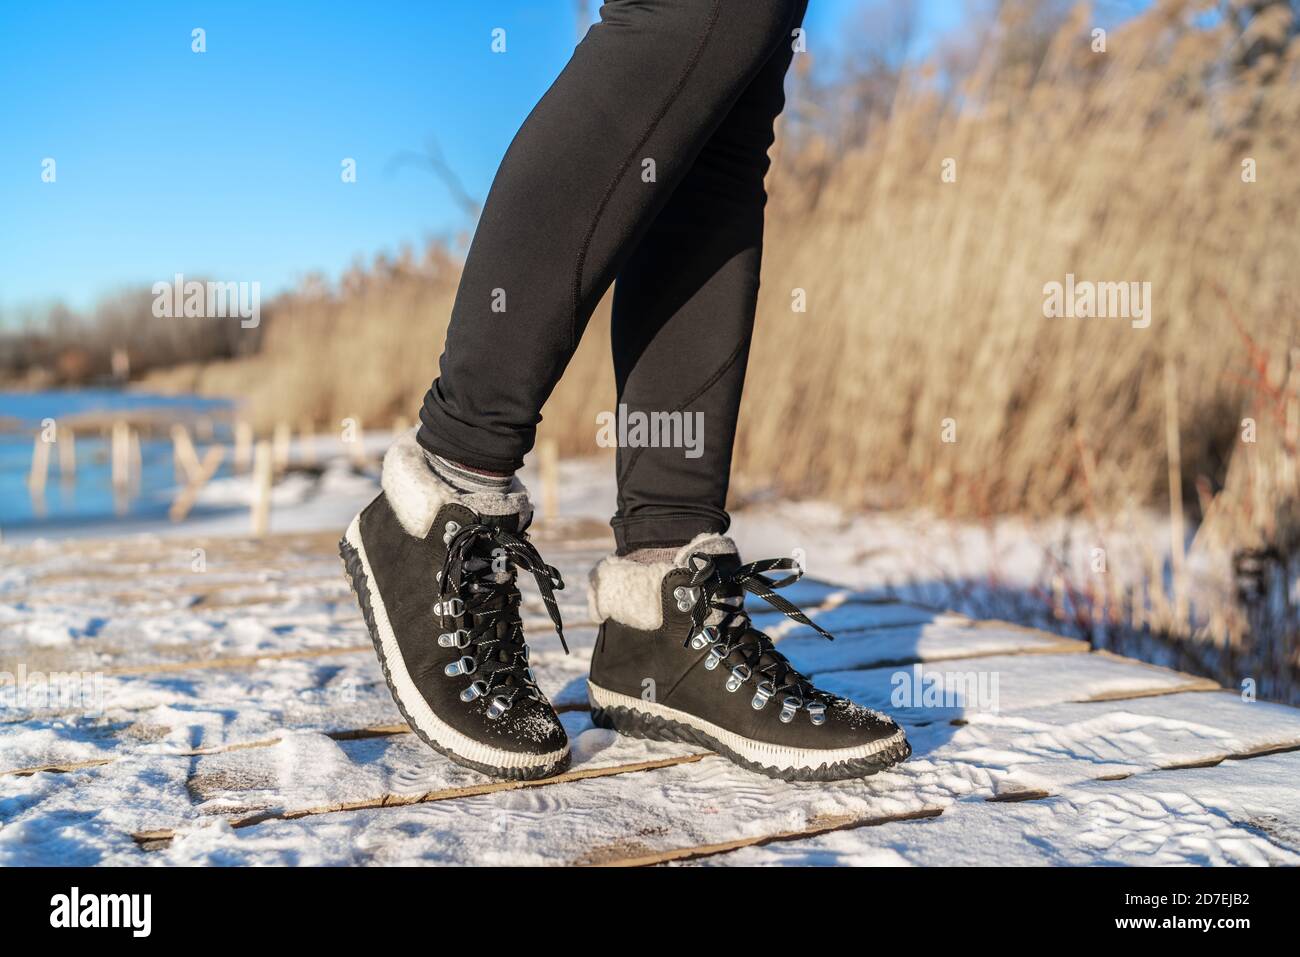 Bottes de neige chaussures de mode pour la saison d'hiver fille portant noir chaussures montantes en cuir Banque D'Images